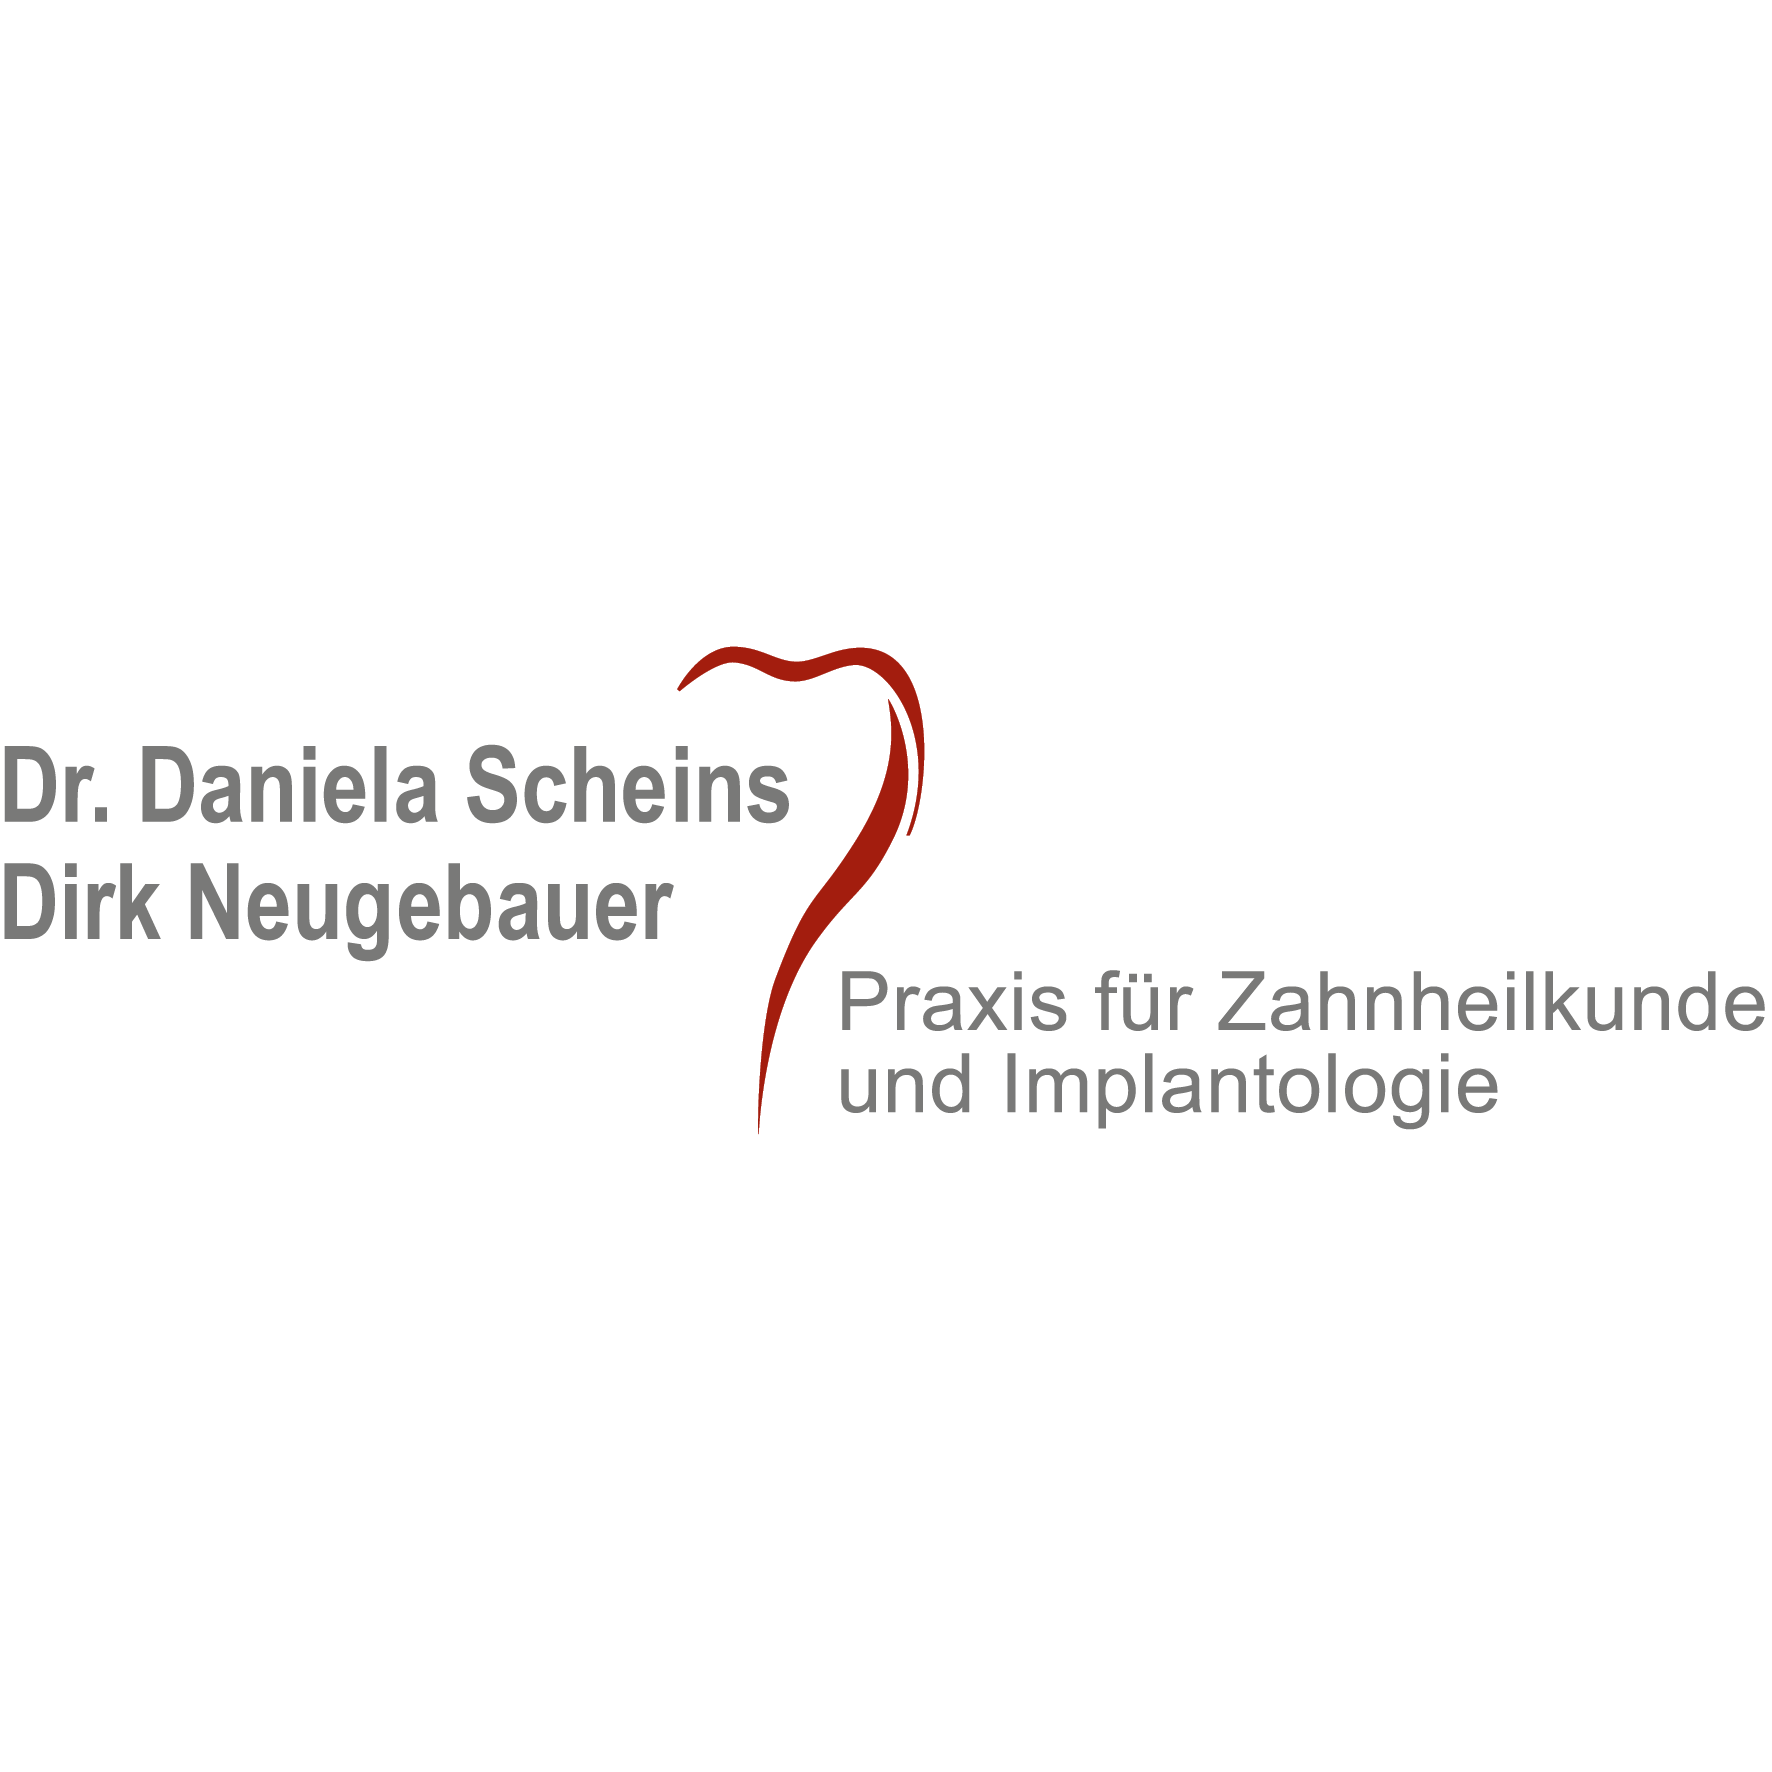 Dr. D. Scheins & D. Neugebauer in Kleinmachnow